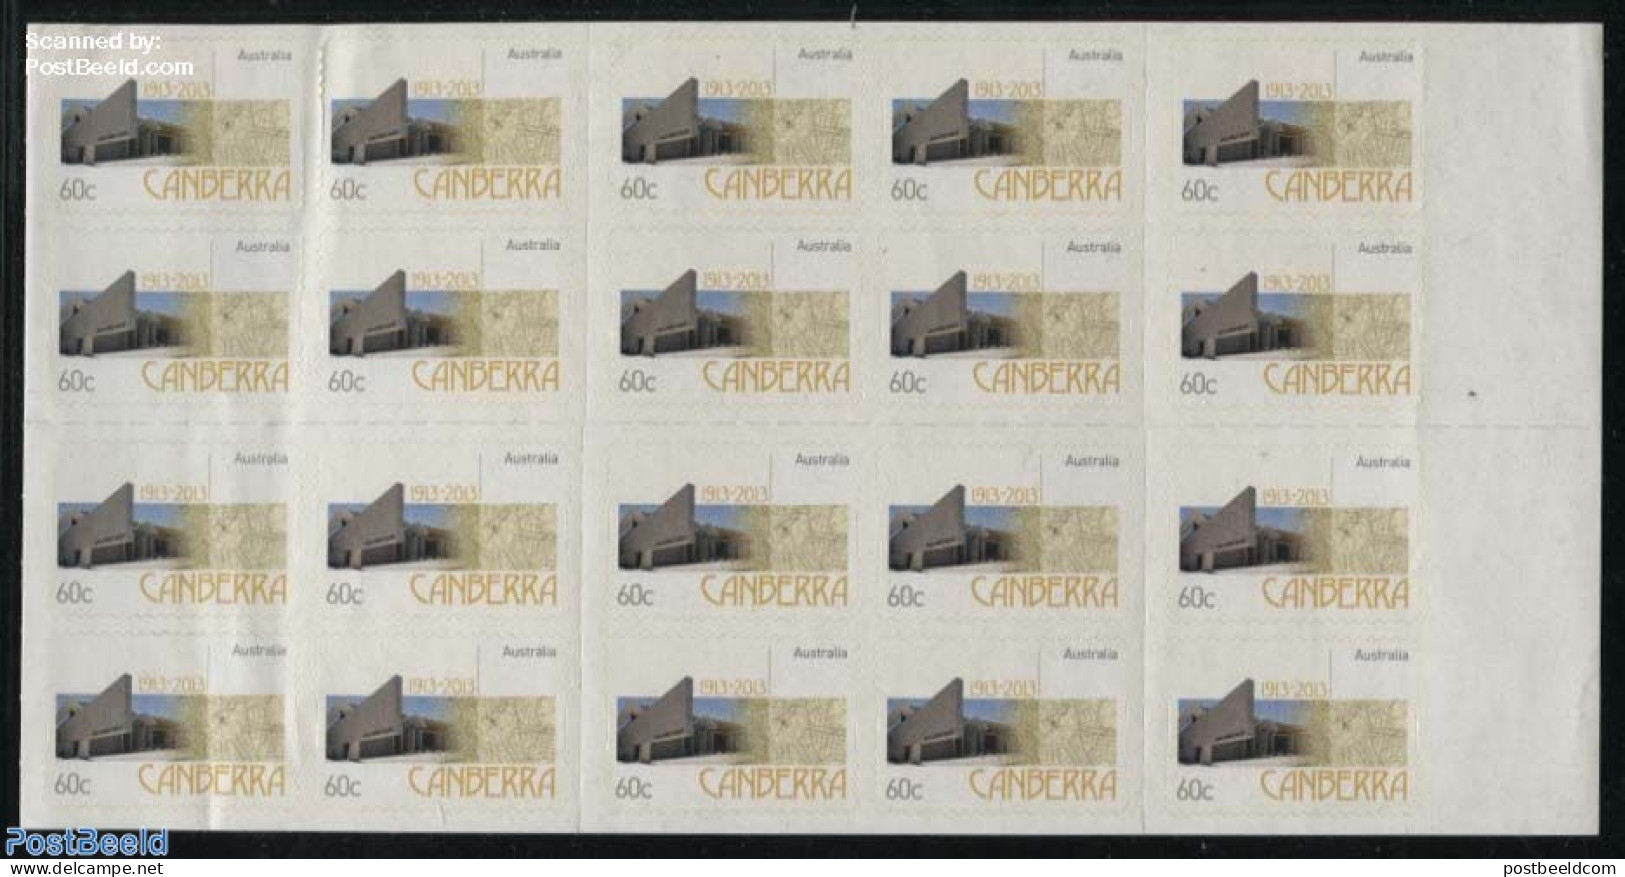 Australia 2013 Canberra Foil Booklet, Mint NH, Stamp Booklets - Unused Stamps